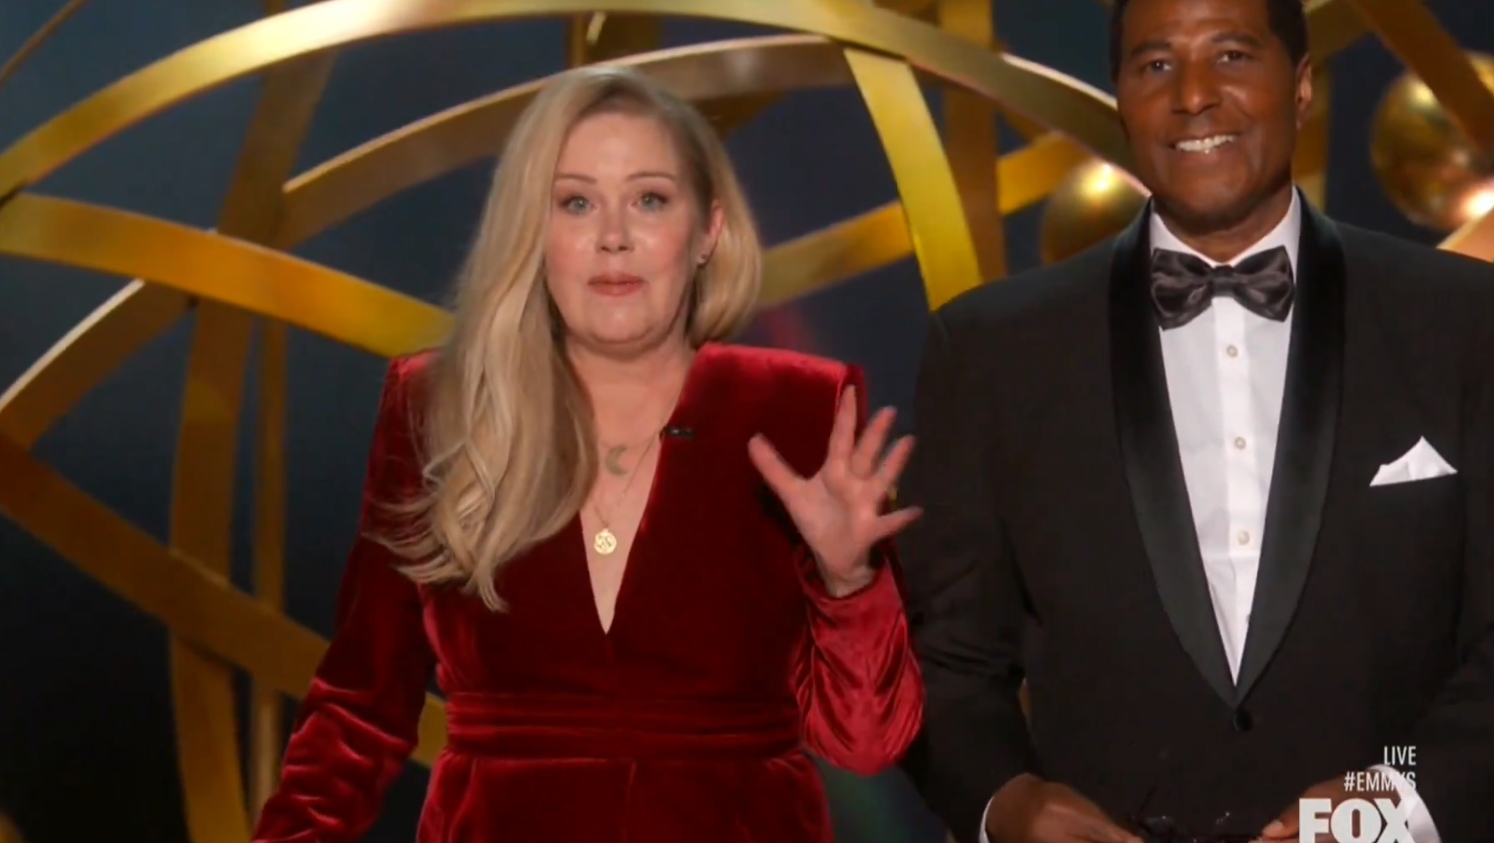 Βραβεία Emmy: Όρθιοι για το χειροκρότημα στη μαχήτρια Christina Applegate – Οι viral στιγμές της απονομής